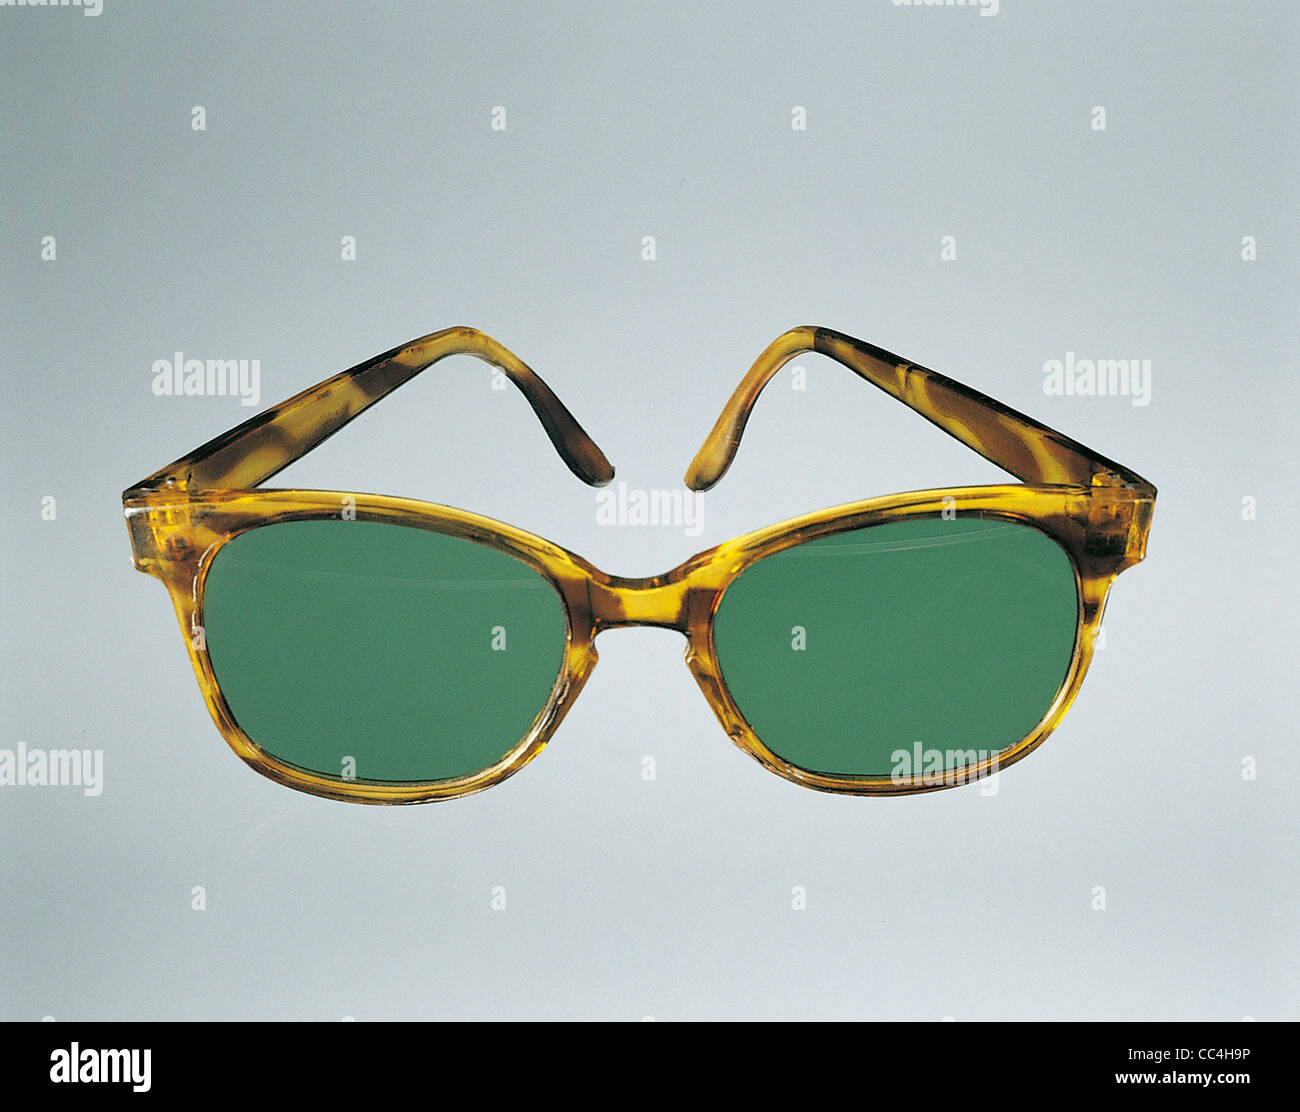 Mode-Accessoires: Sonnenbrillen Kunststofflinse Grünstich 60-70 Fabrik Industrie trat Casalmaggiore Stockfoto